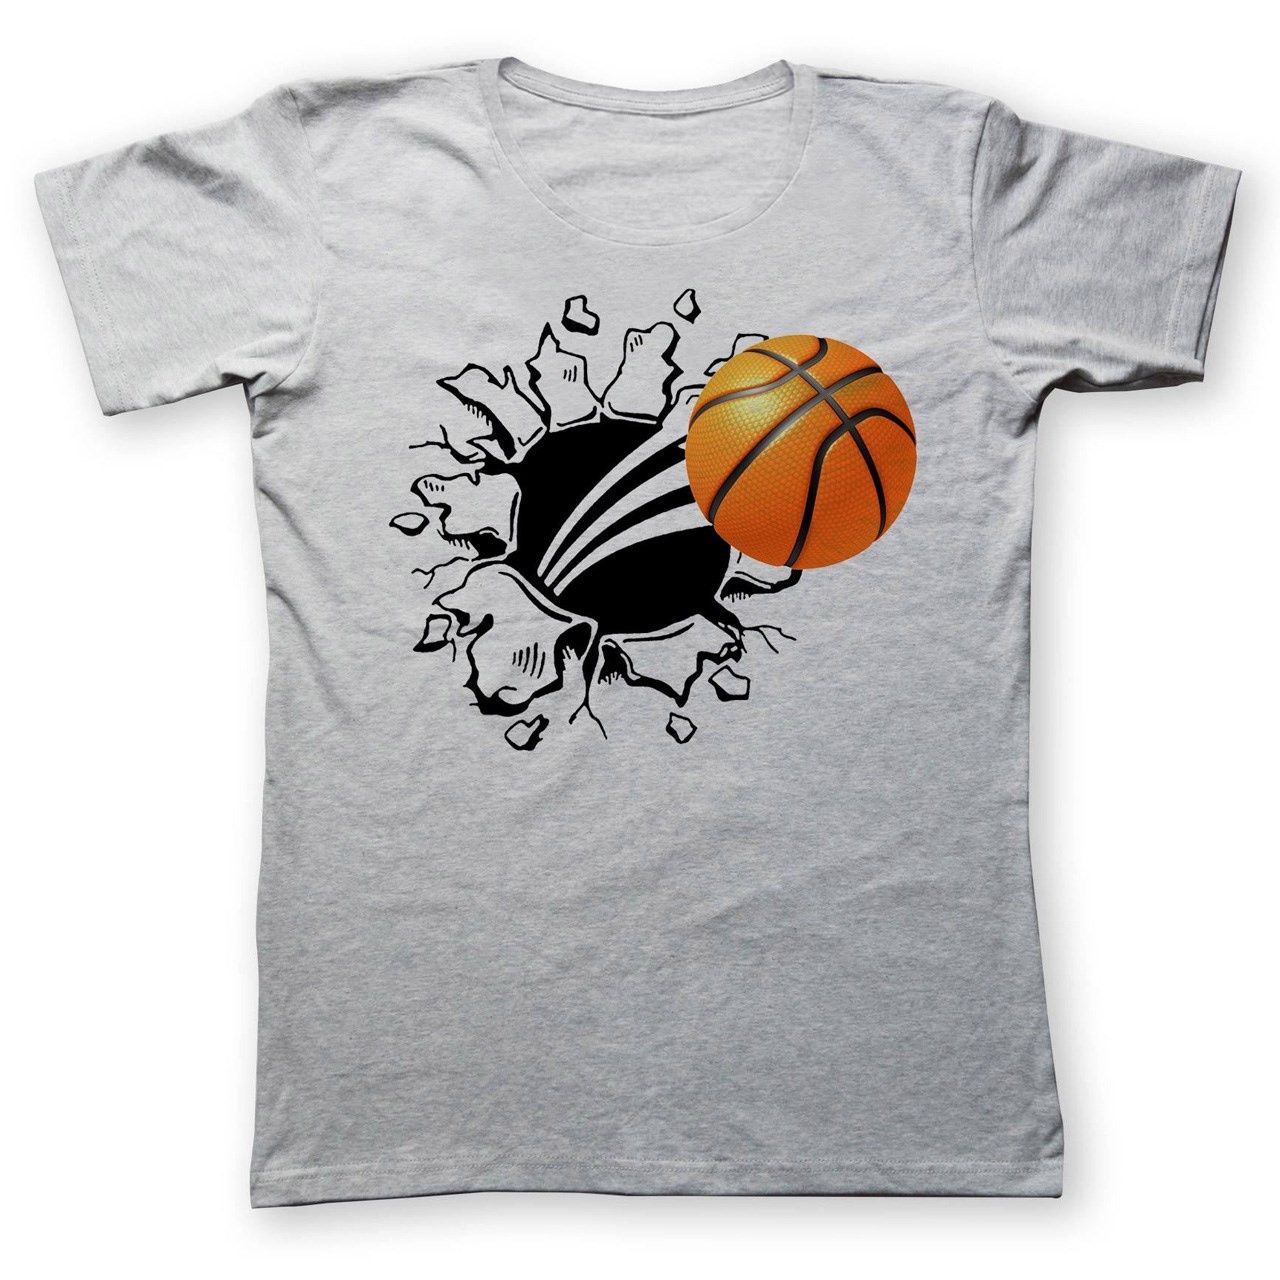 تی شرت مردانه  به رسم طرح توپ بسکتبال کد 225 -  - 1